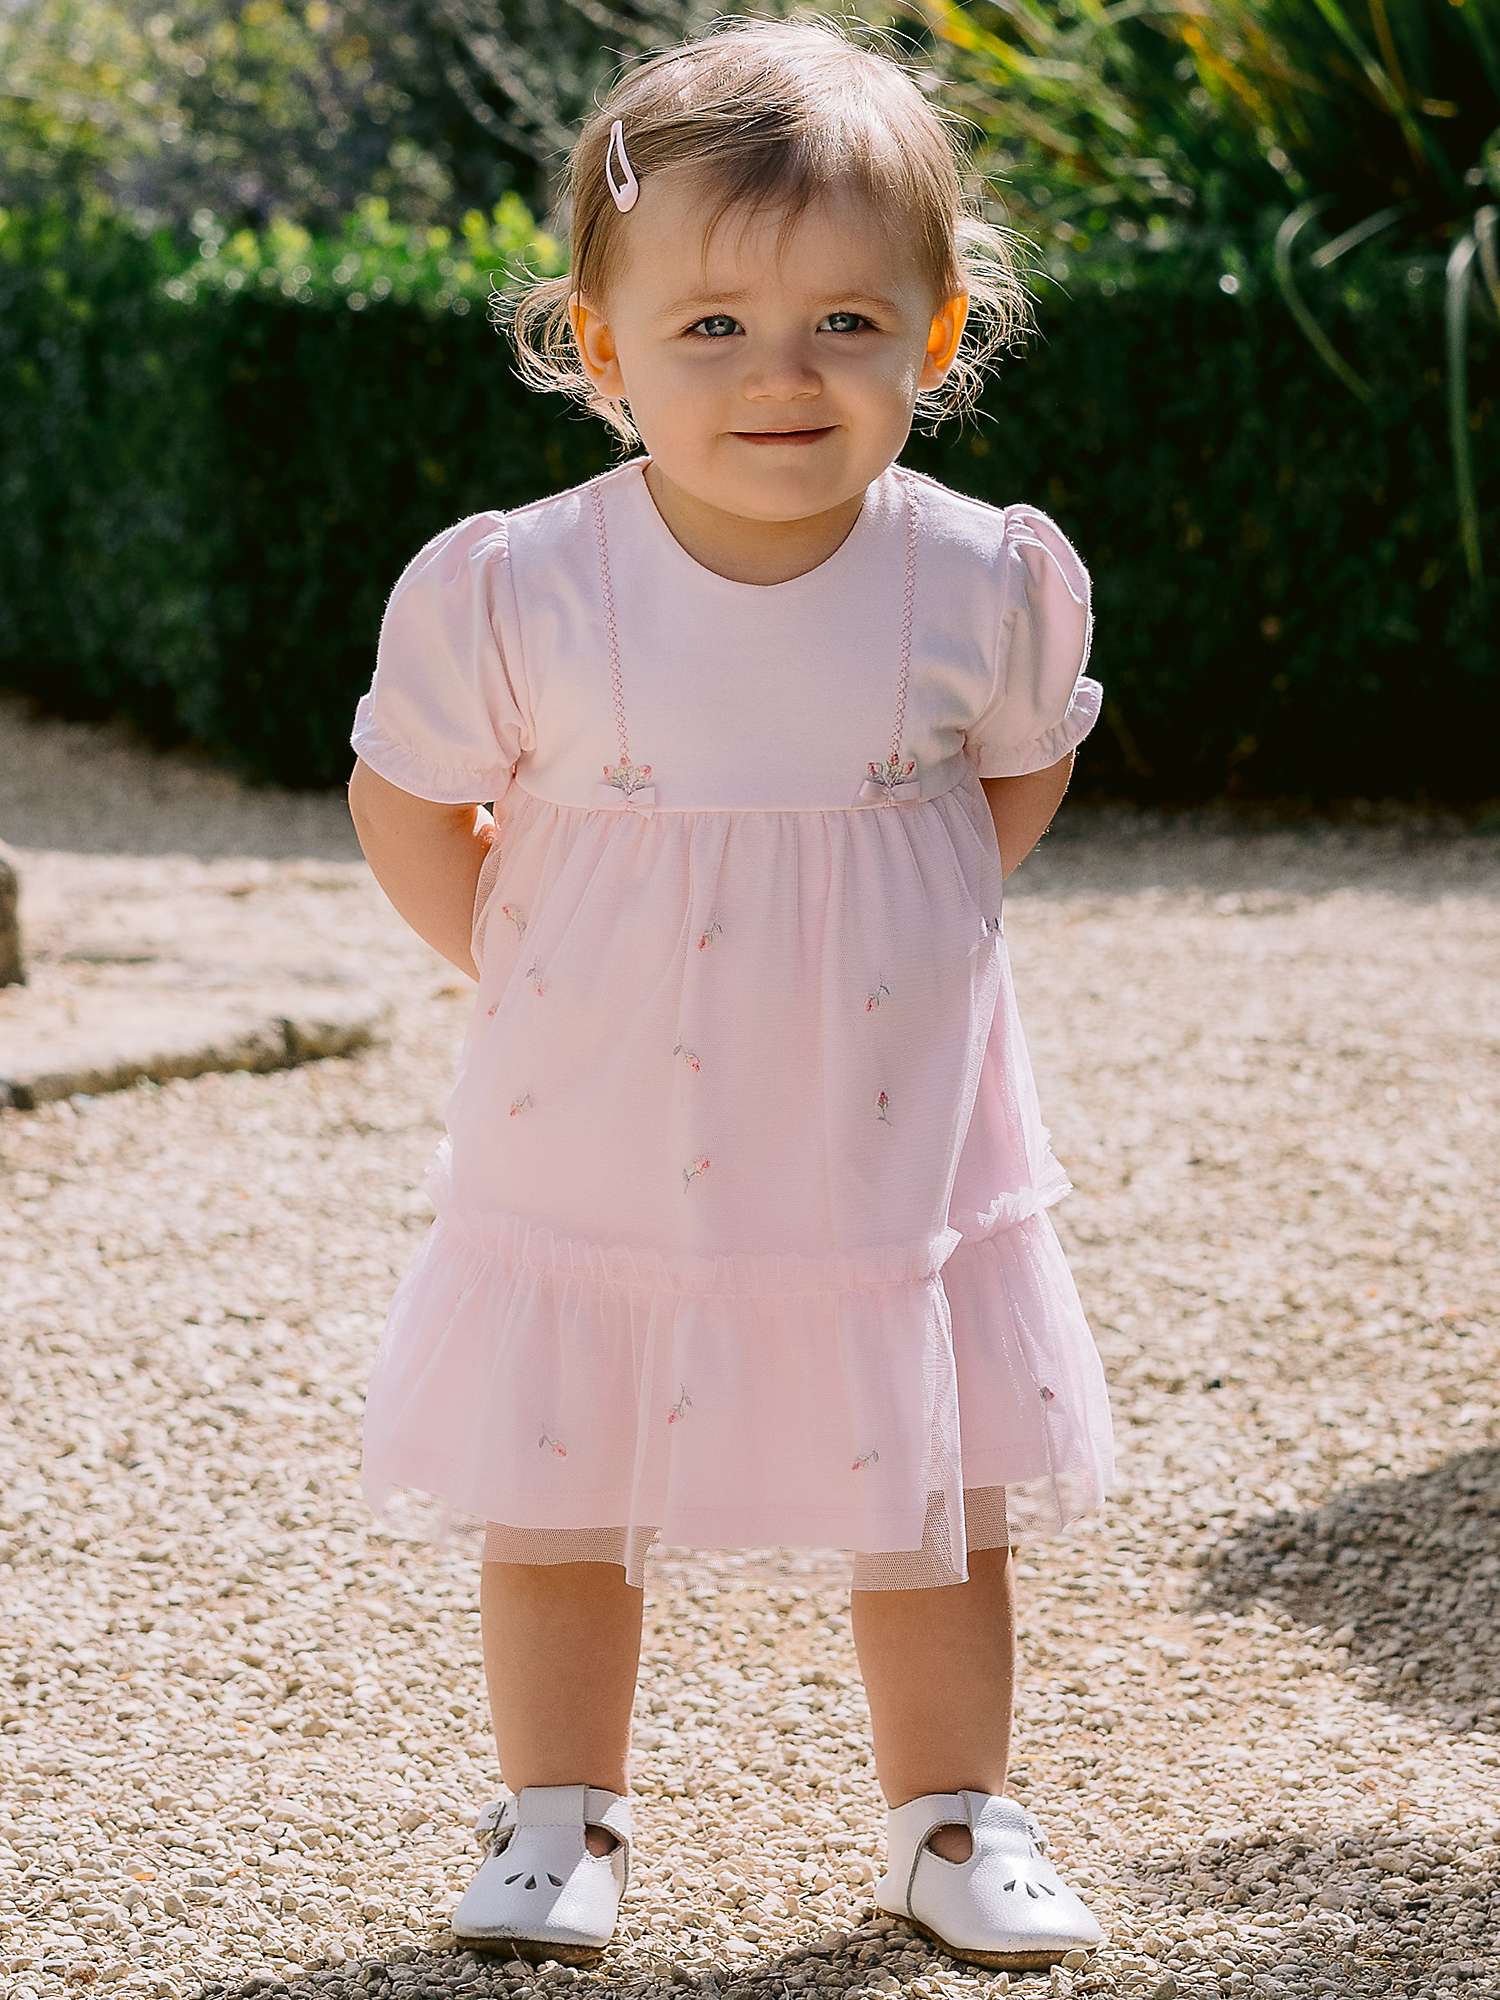 Buy Emile et Rose Baby Fabienne Dress & Knicker Set, Pale Pink Online at johnlewis.com